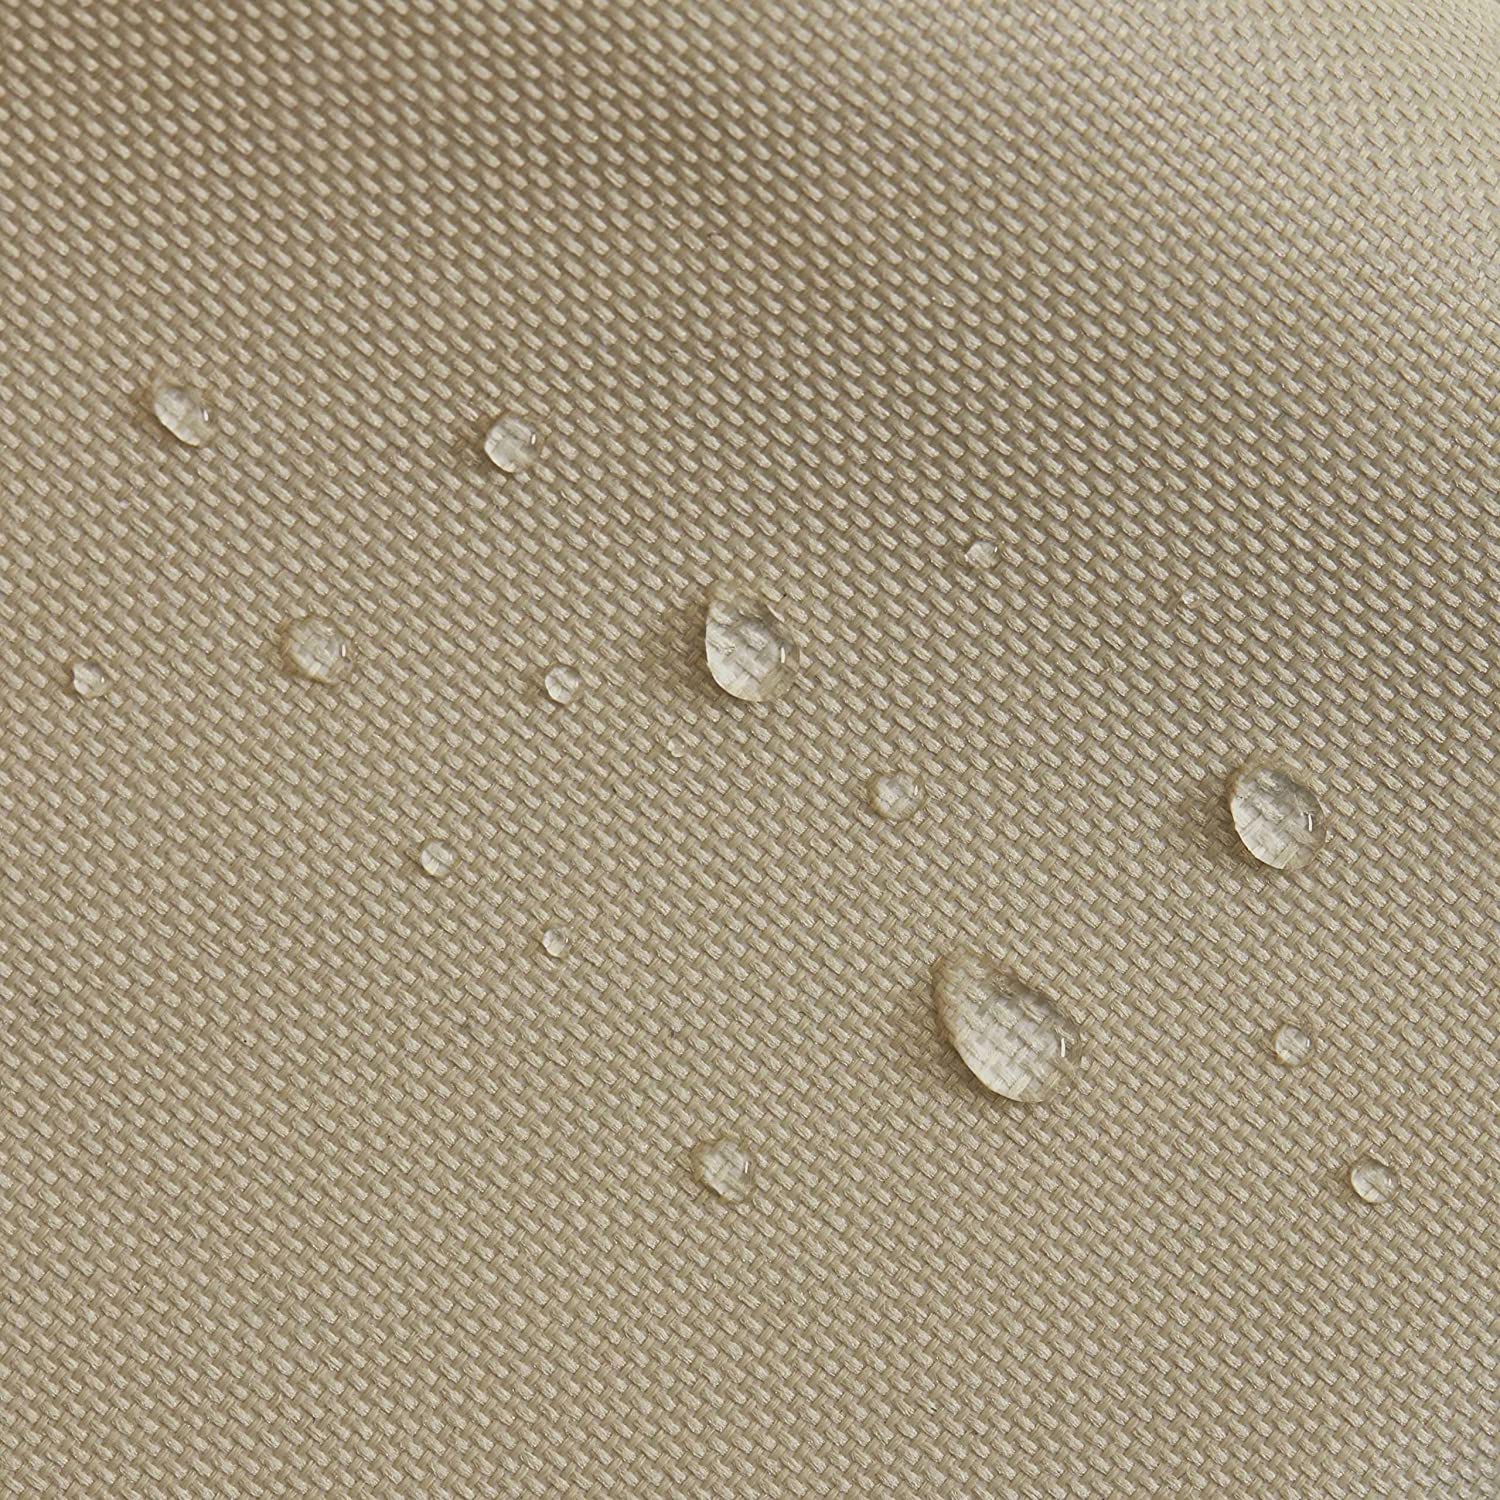 Abdeckung für Sonnenschirm - 170 x 27,5/33,5 cm - Beige